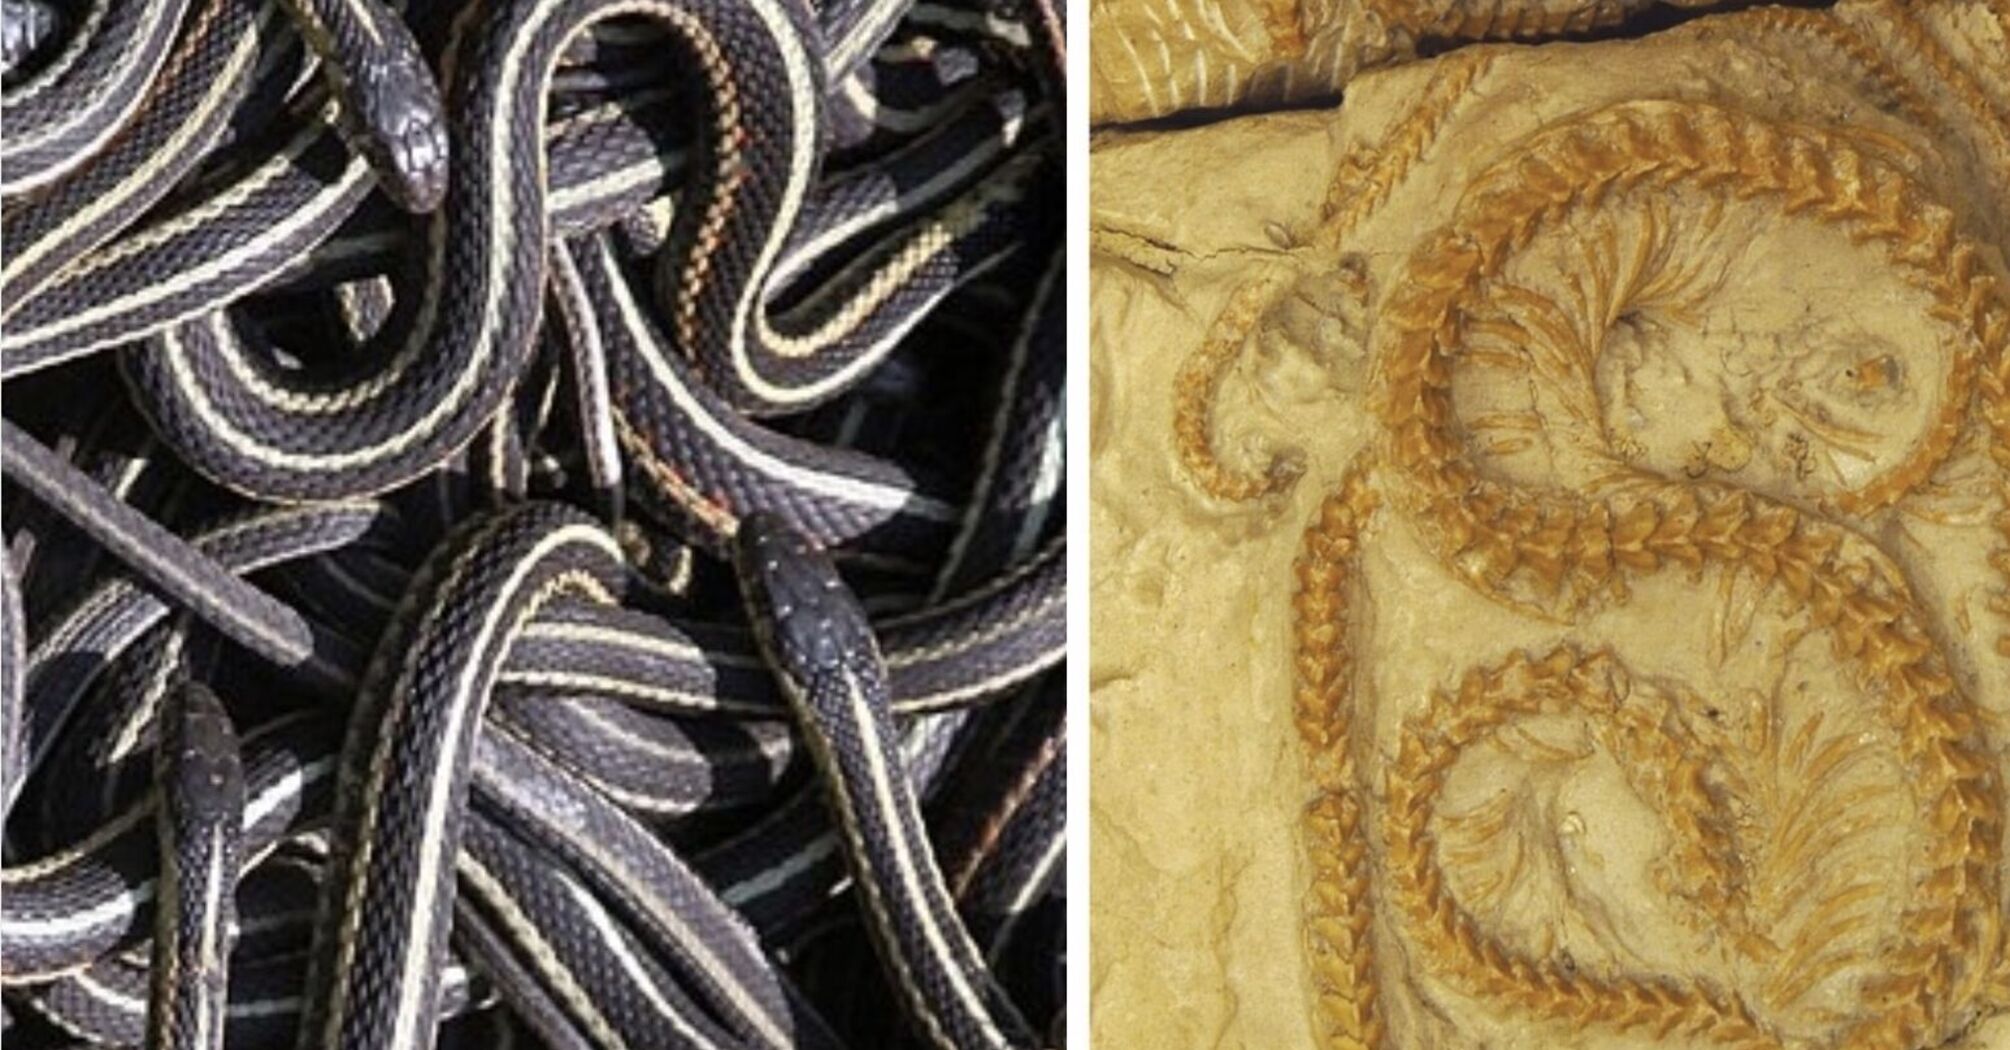 Умерли во время спячки: в США среди вулканического пепла обнаружили совершенно новый вид древних змей (фото)